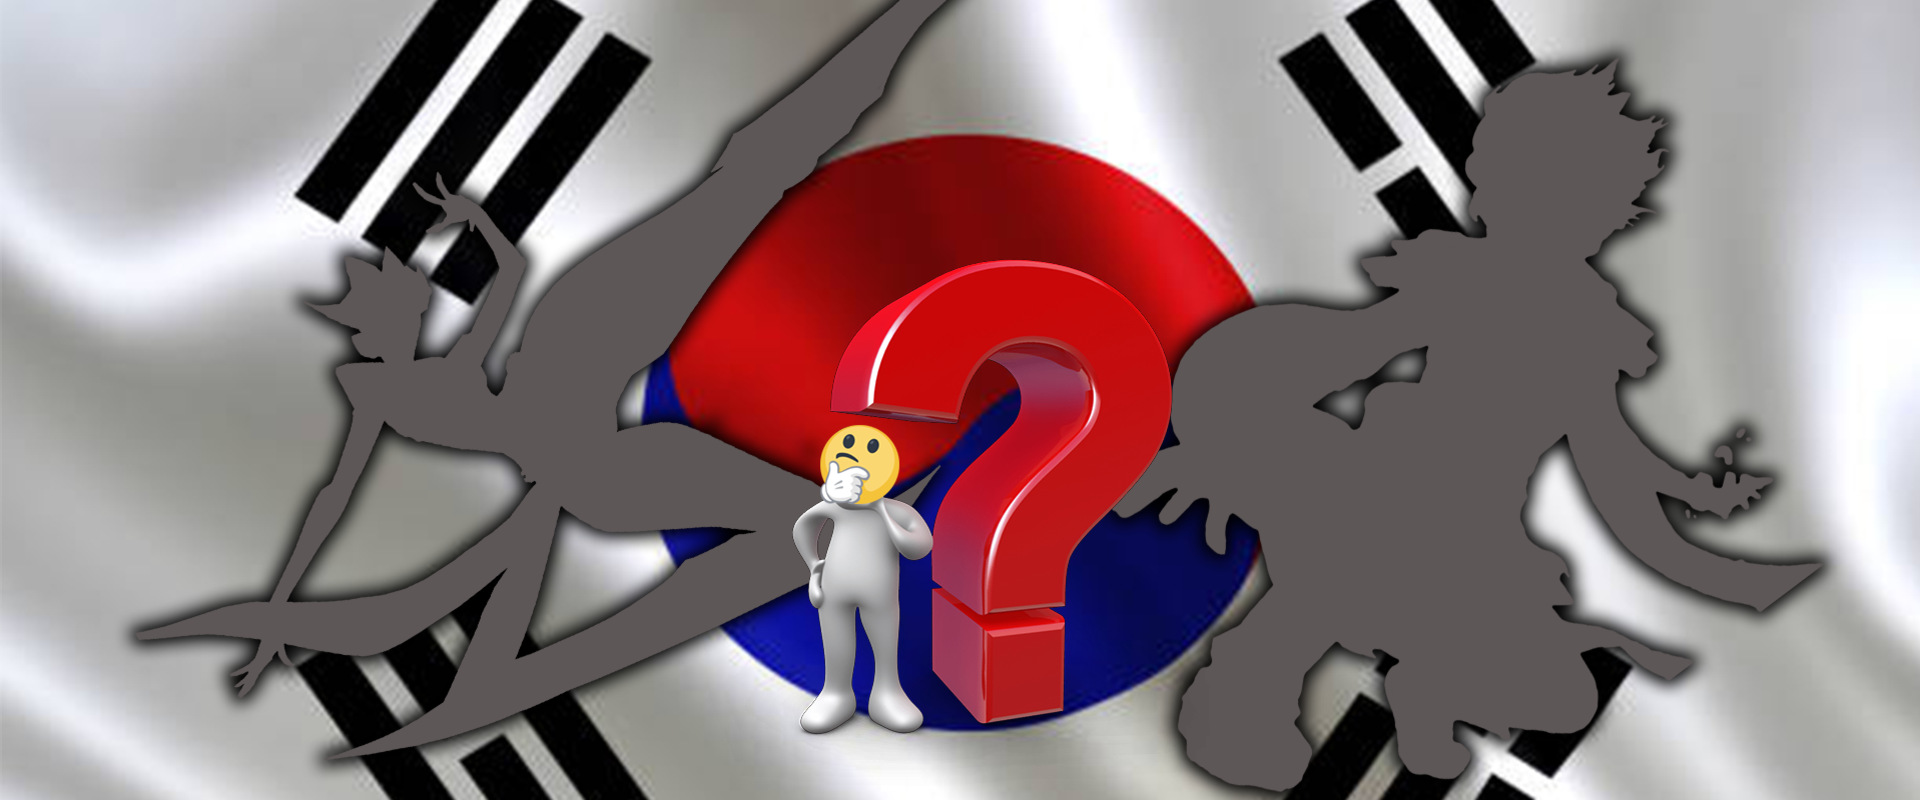 Két dzsungel karakter uralja a koreai ranglétrát; lehet, hogy túl erősek?